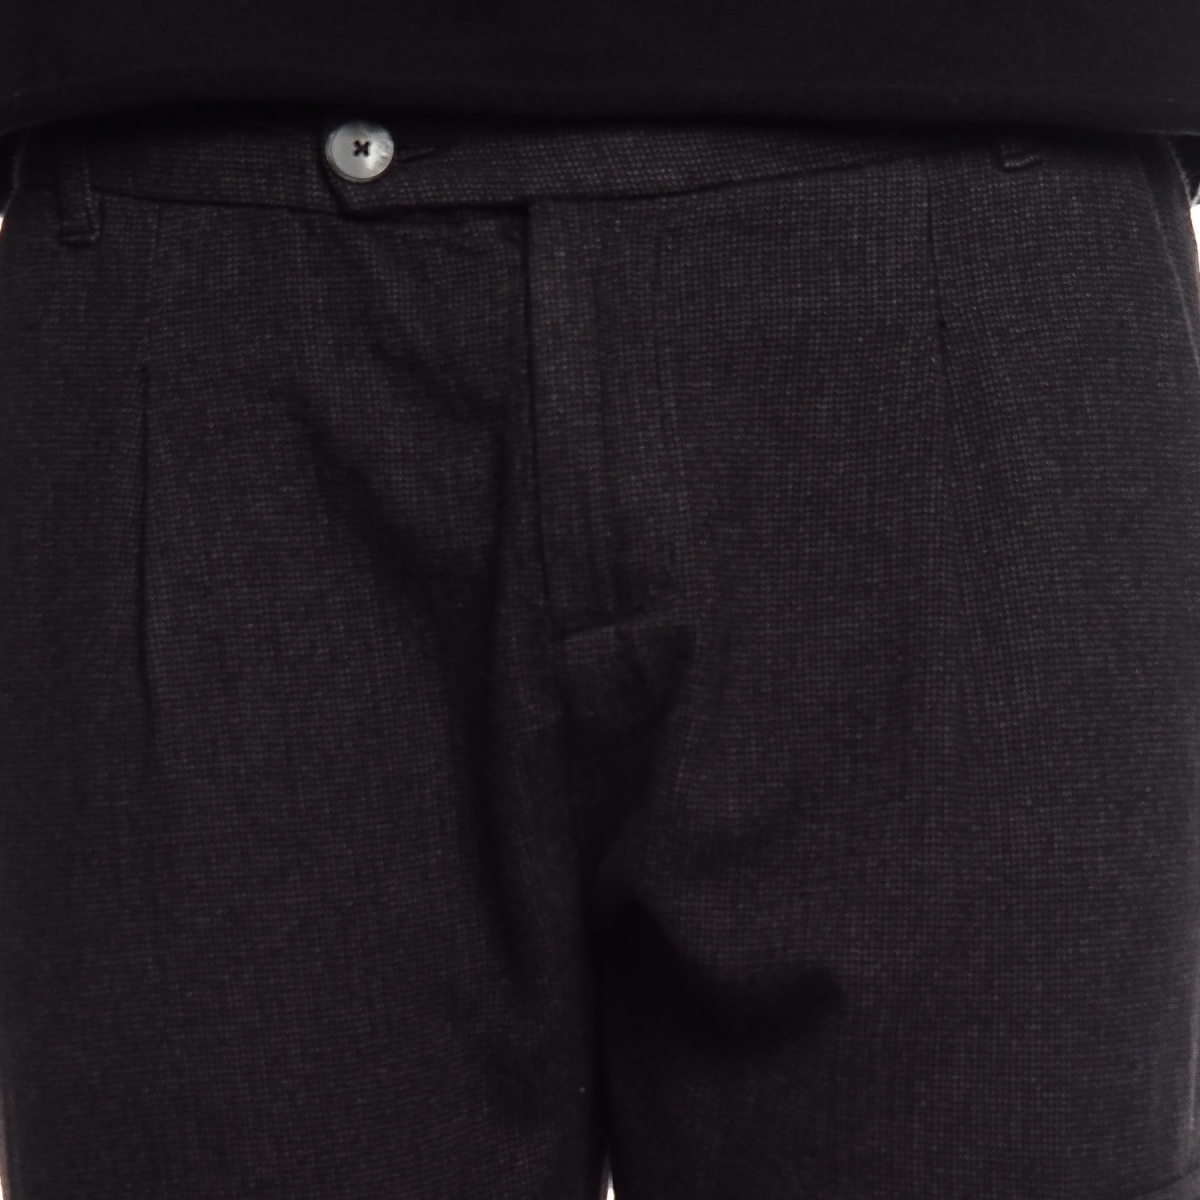 Verkäufe von Herrenbekleidung Pantaloni OUTLET G2026 NERO Cafedelmar Shop